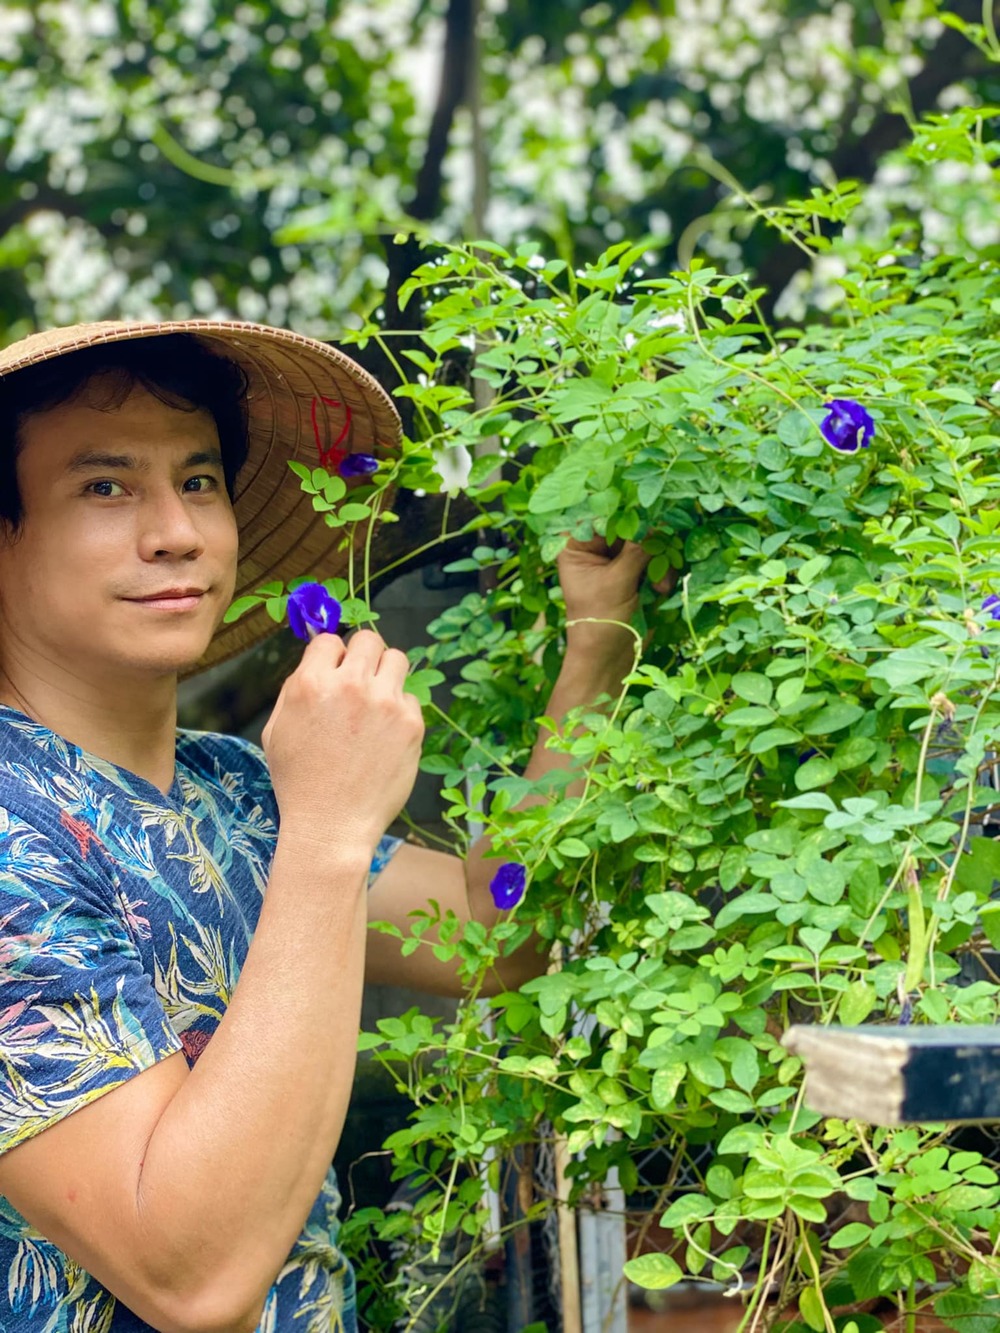  Nam diễn viên luôn tự tay chăm sóc cây trồng trong khu vườn của mình. (Ảnh: FB Trí Quang) - Tin sao Viet - Tin tuc sao Viet - Scandal sao Viet - Tin tuc cua Sao - Tin cua Sao